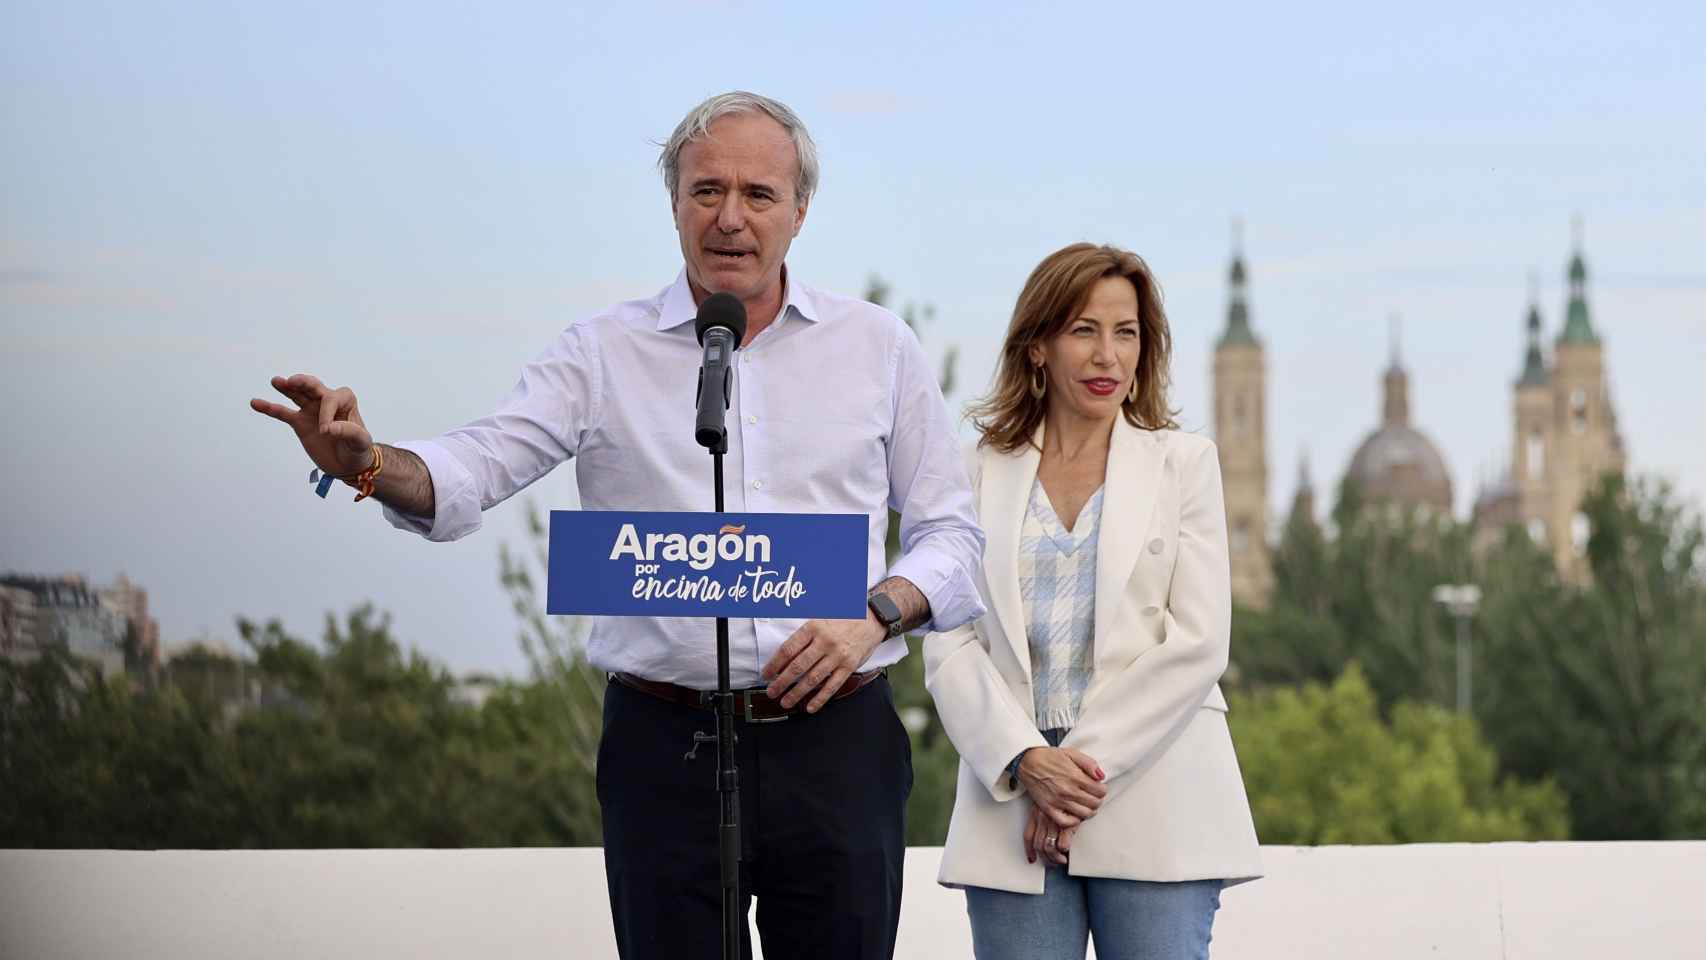 El candidato del PP en Aragón, Jorge Azcón, en un mitin con la candidata en Zaragoza, Natalia Chueca